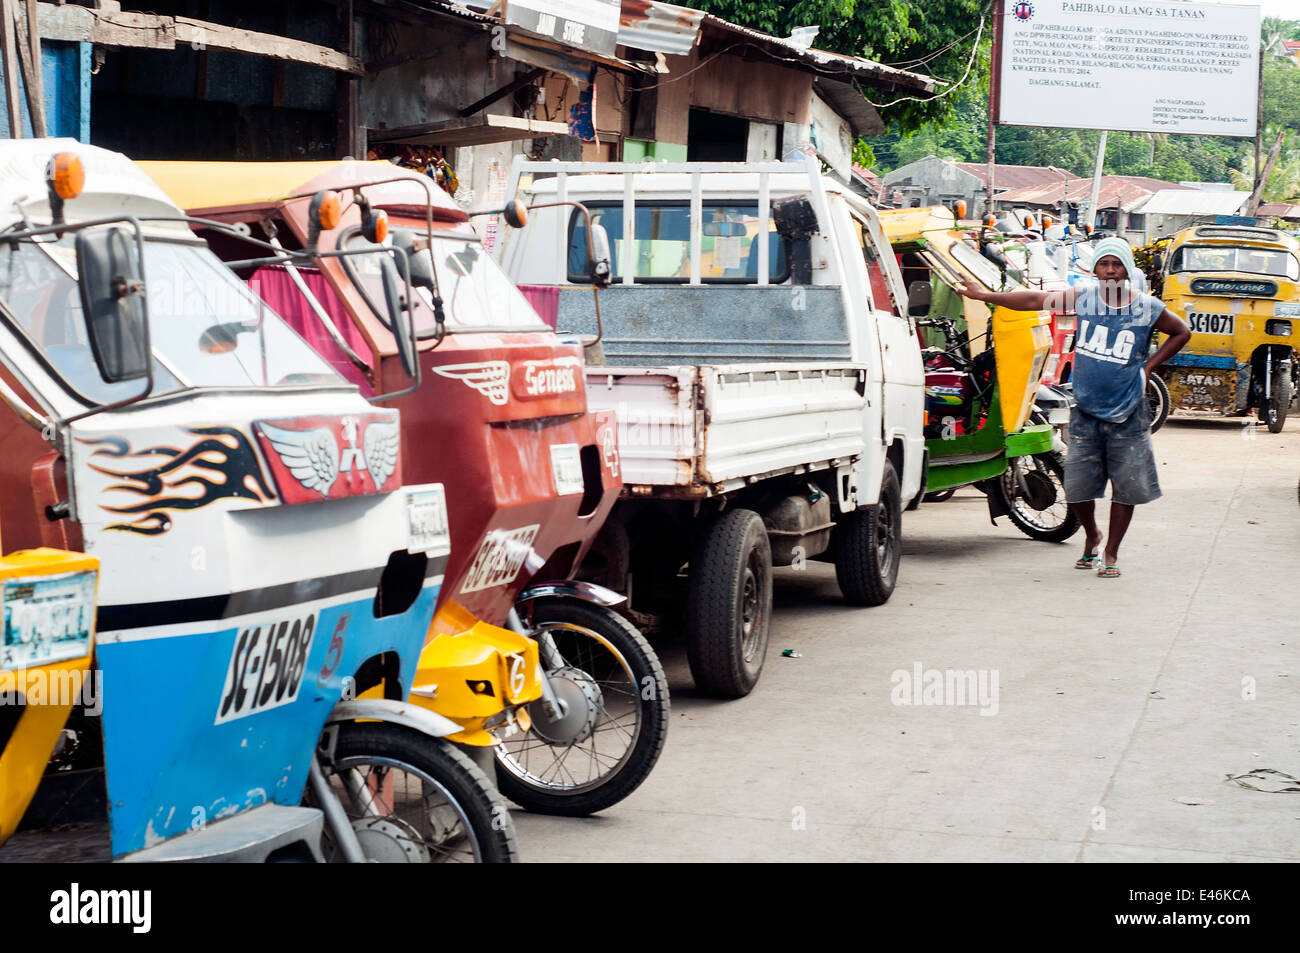 tricycles, Port area, Surigao, Mindanao, Philippines Stock Photo